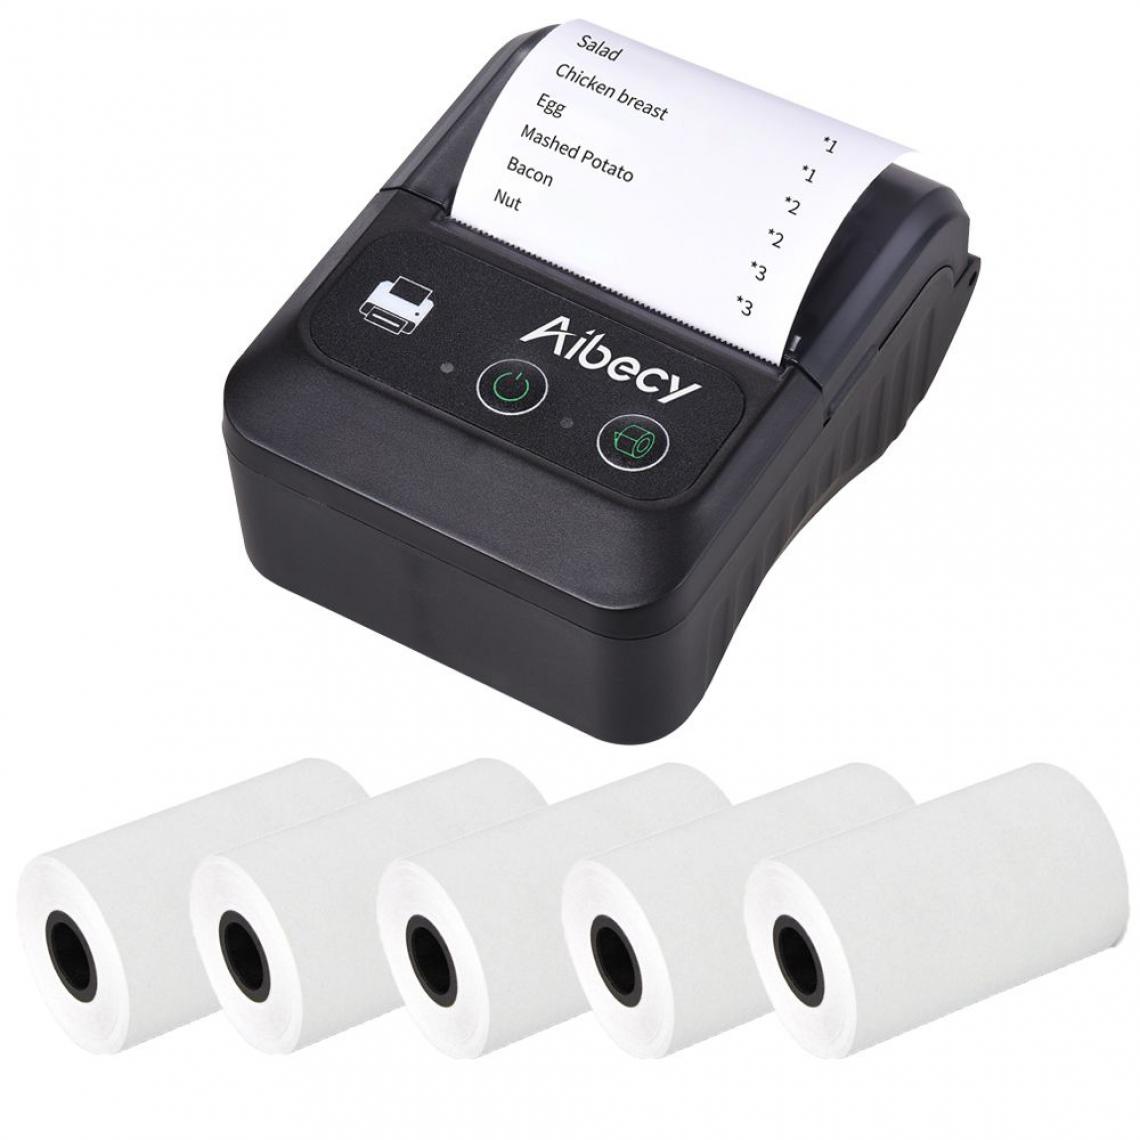 Generic - Imprimante d'Étiquettes Thermique sans Fil Bluetooth, 58mm avec 3 Rouleaux papier ,  Connexion par Bluetooth et câble USB, Compatible avec iOS, Android, système Windows  7.8 *10.5 *4.7 cm -  Noir  - Imprimantes d'étiquettes